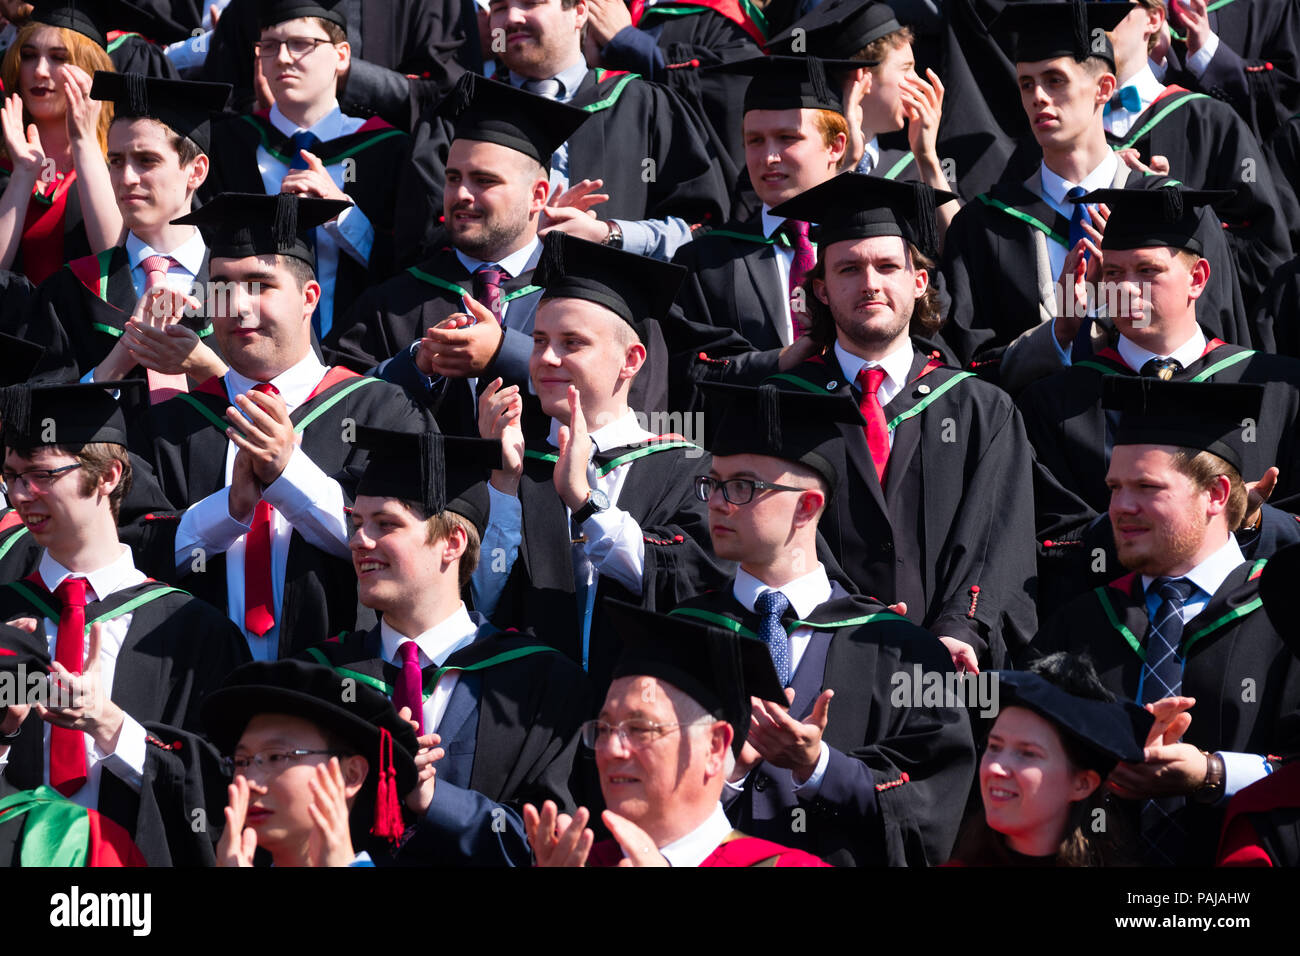 L'enseignement supérieur au Royaume-Uni : les finissants d'université d'Aberystwyth, à leurs conseils et le mortier traditionnel robes académiques noir, posant pour la photo de groupe traditionnelle. Juillet 2018 Banque D'Images